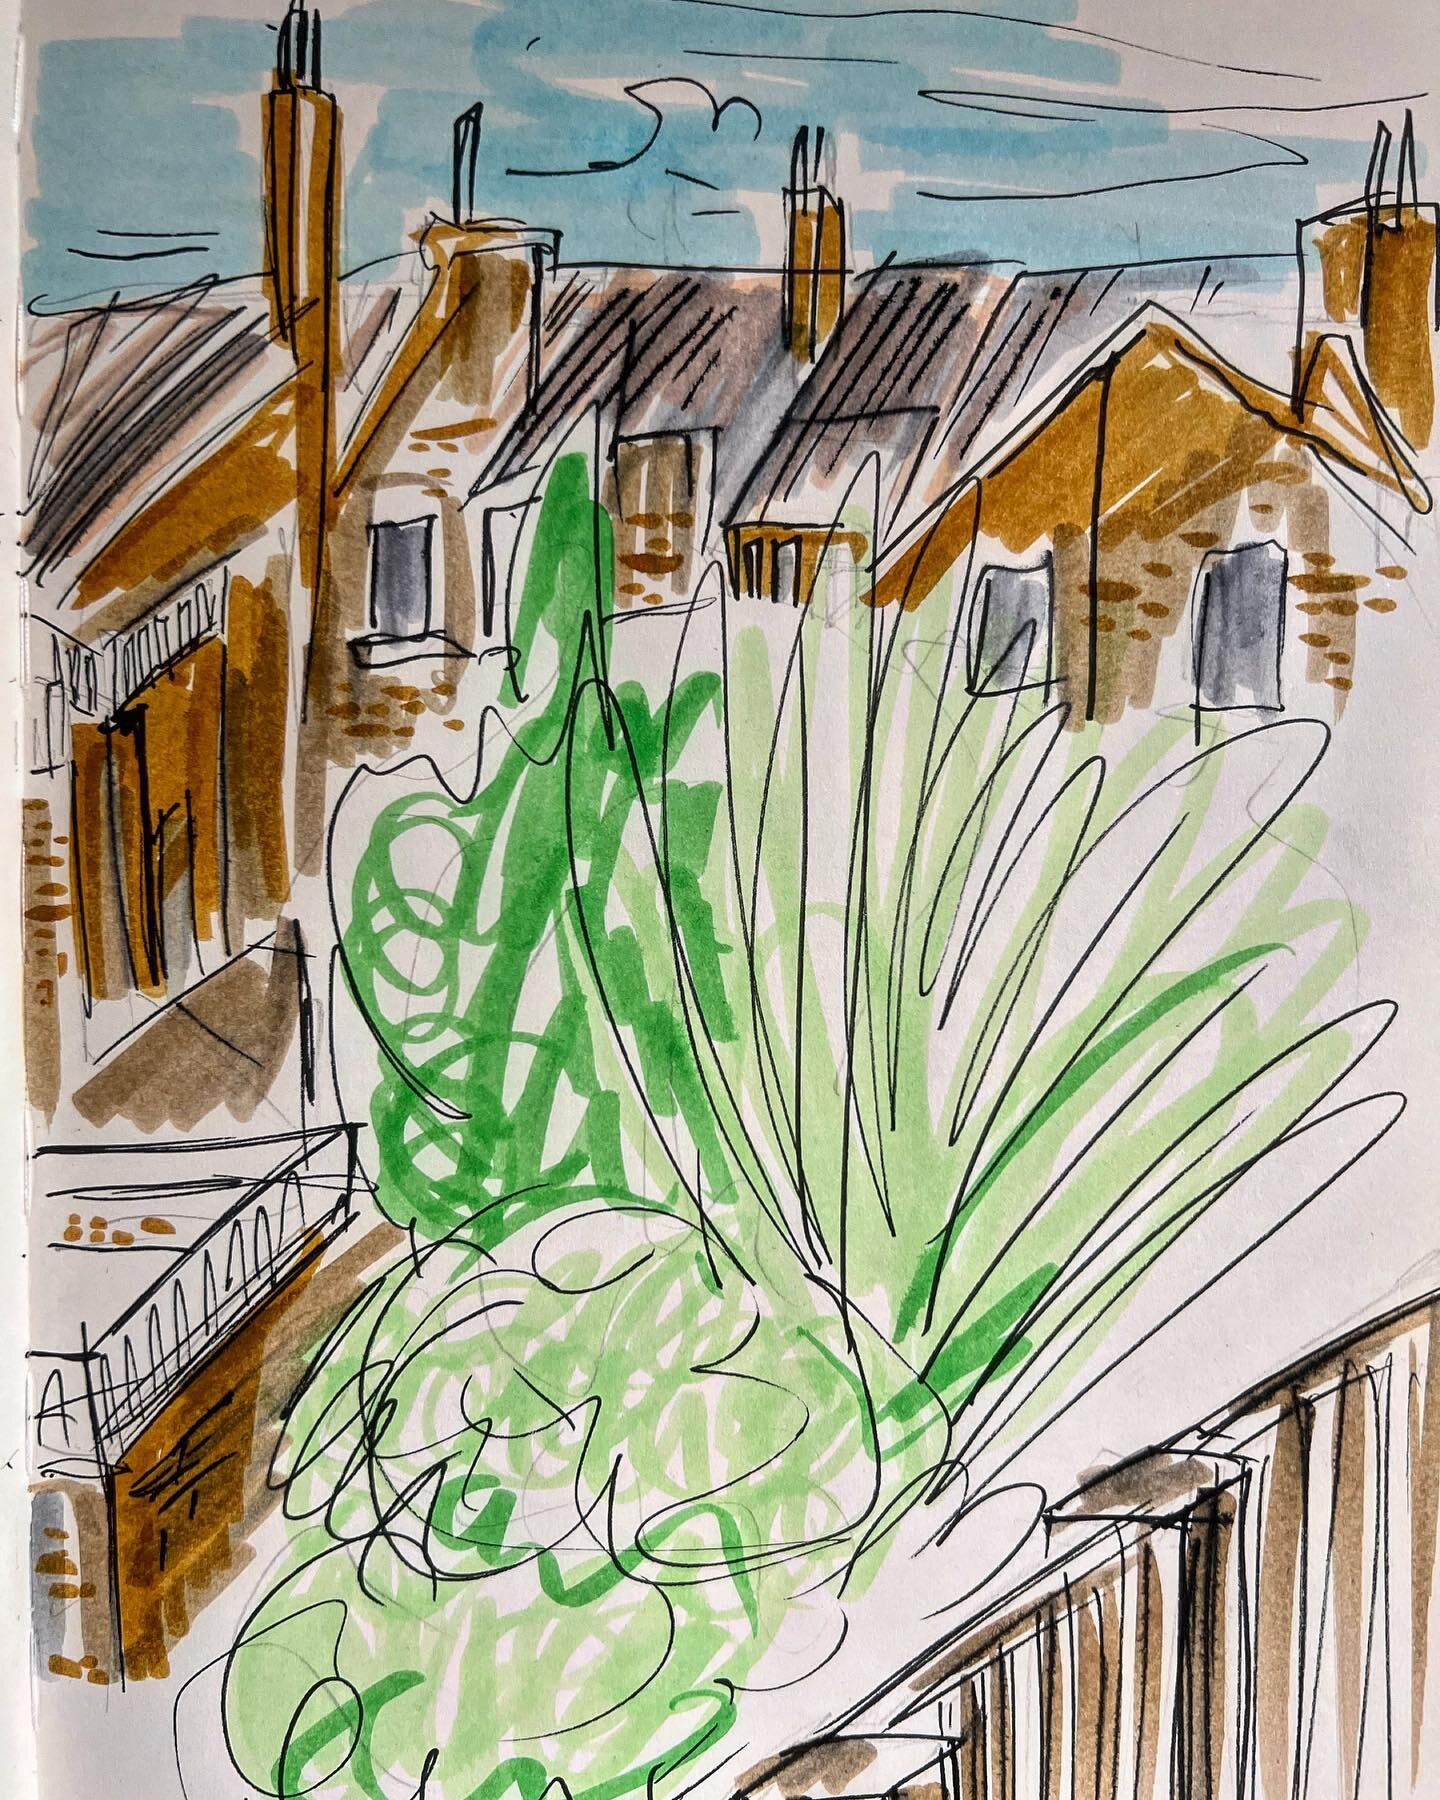 The view outside my window 😌
.
.
.
.
.
.
.
.
.
.
.
.
.
.
.
.
.
.
.
#drawing #art #illustration #sketchbook #sketch #sketchbookpages #window #kilburn #london #talens #moleskine #sketchbookpage #brushpen #posca #ink #fineart #landscapestudy #buildings